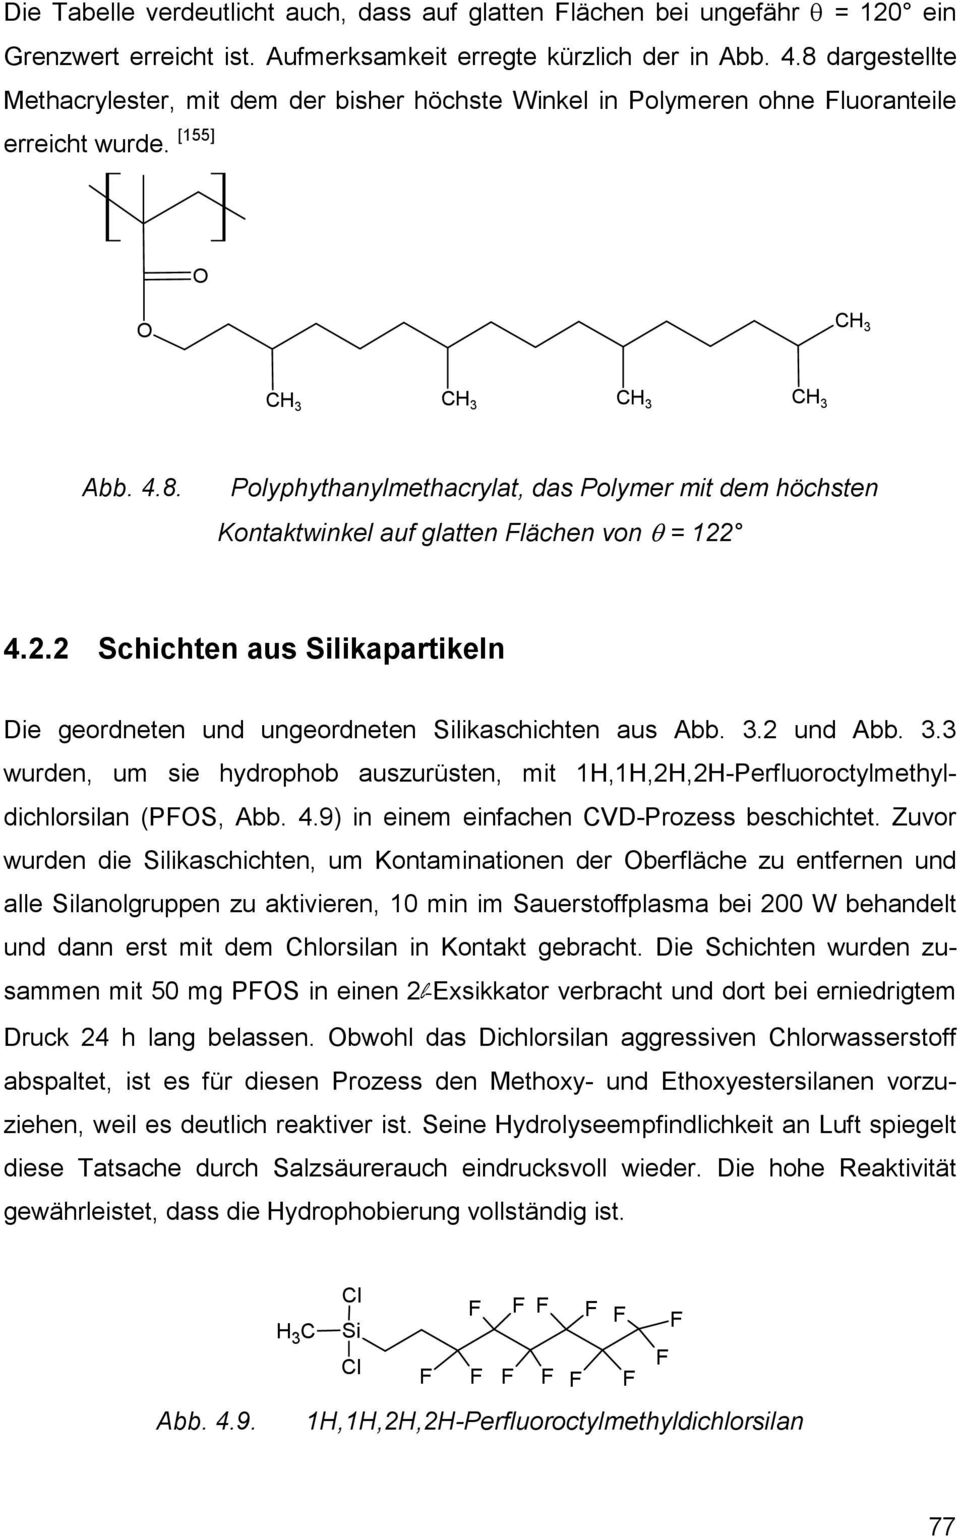 2.2 Schichten aus Silikapartikeln Die geordneten und ungeordneten Silikaschichten aus Abb. 3.2 und Abb. 3.3 wurden, um sie hydrophob auszurüsten, mit 1H,1H,2H,2H-Perfluoroctylmethyldichlorsilan (PFOS, Abb.